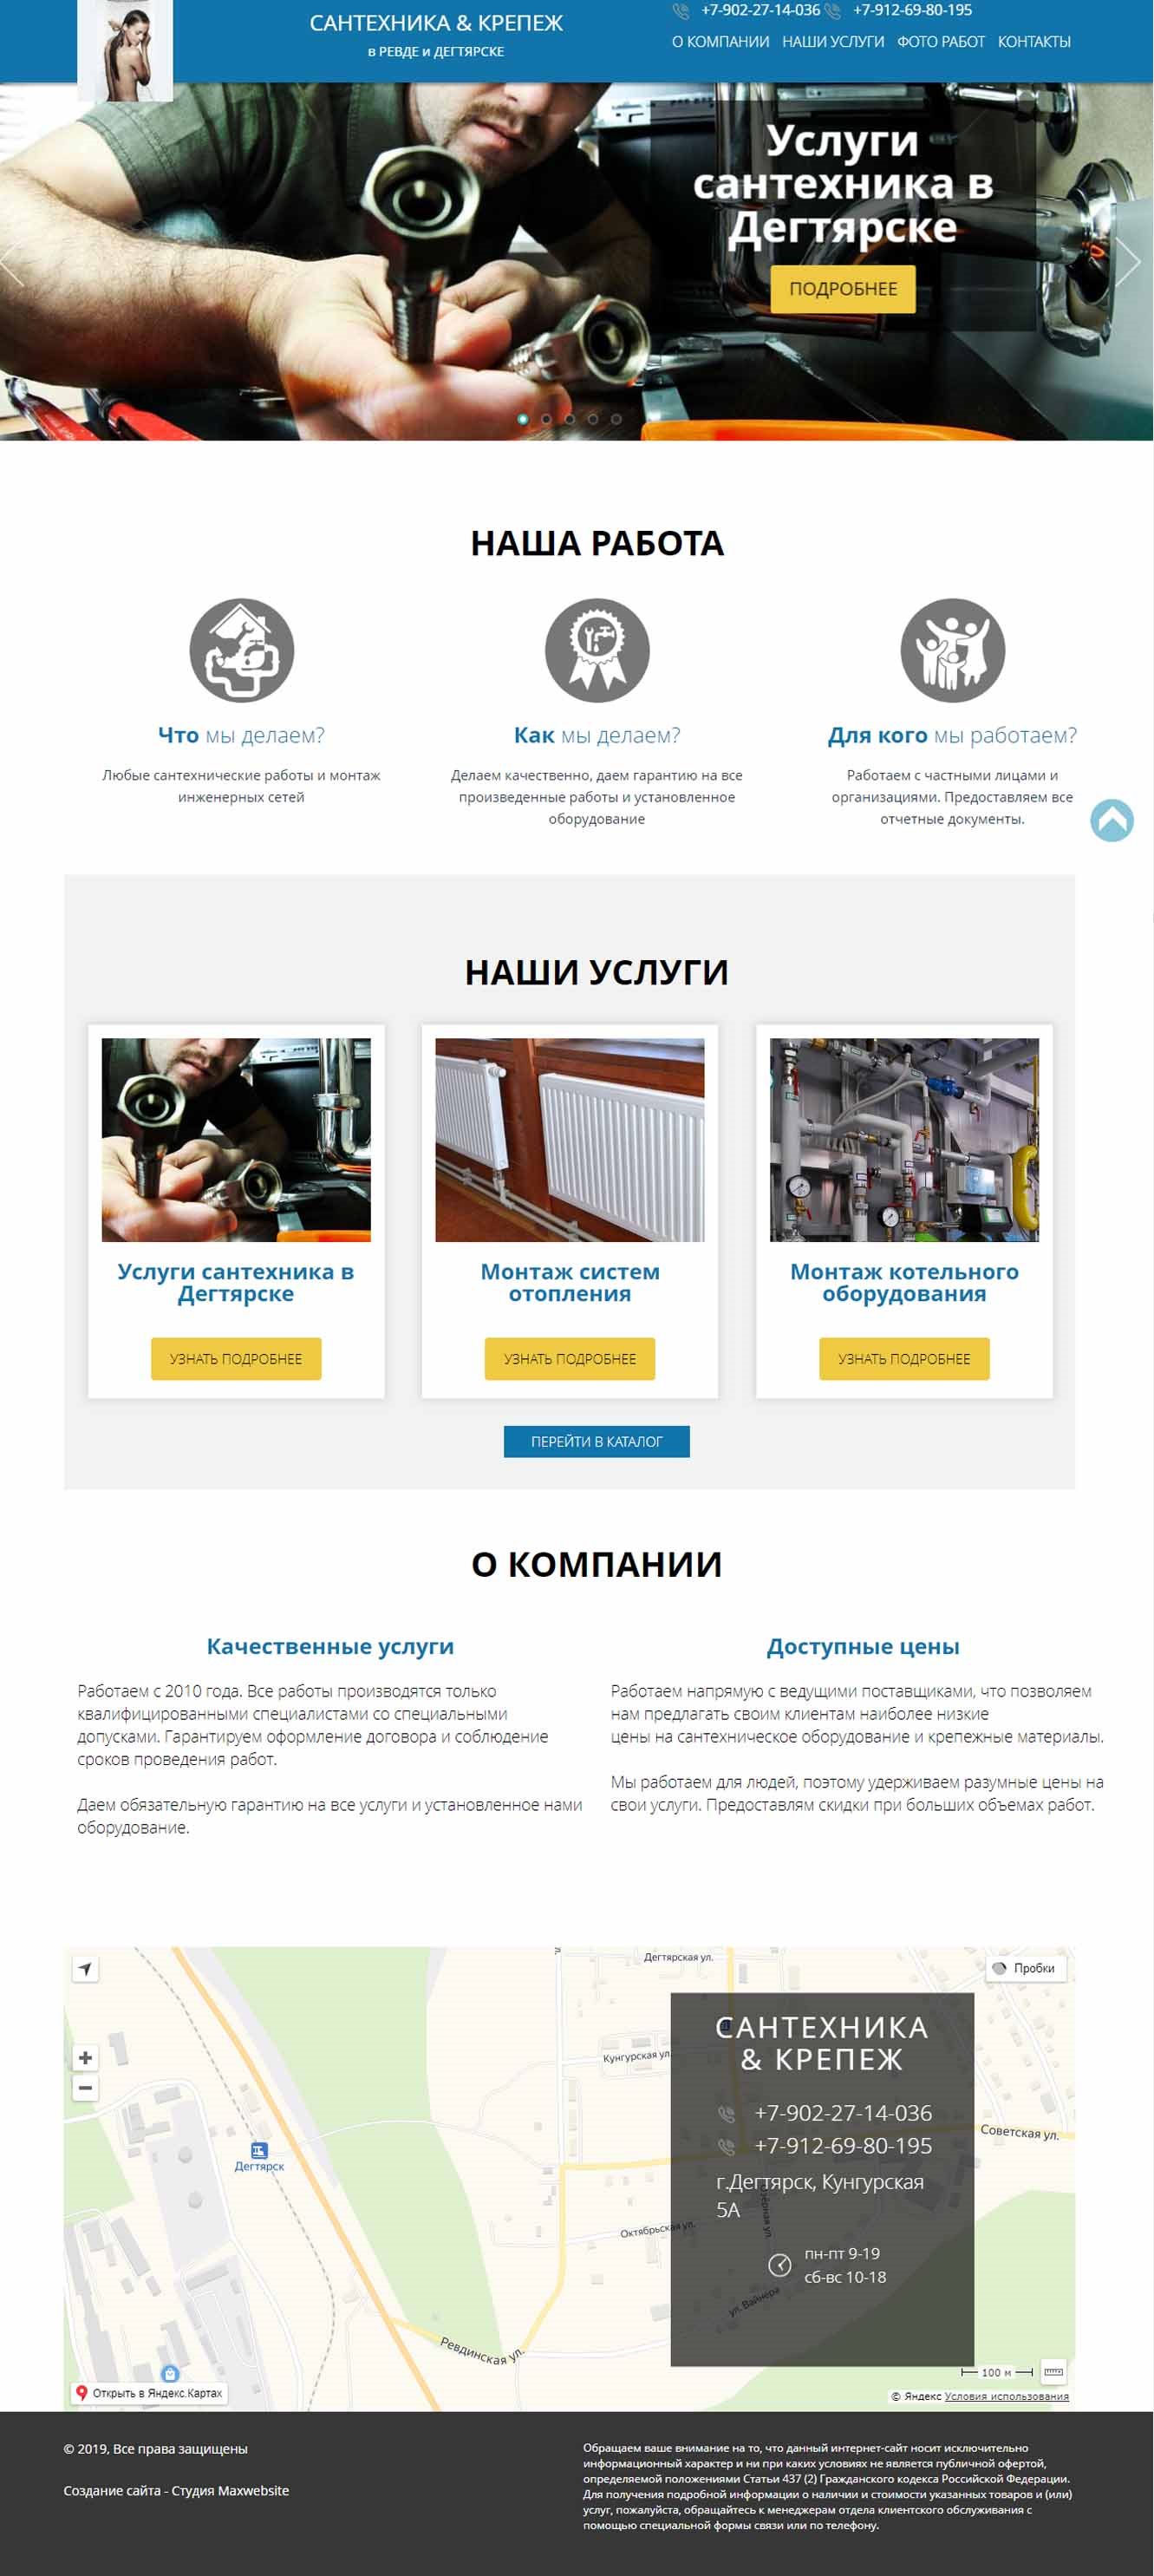 Бизнес-сайт компании, оказывающей сантехнические услуги в г.Дегтярске